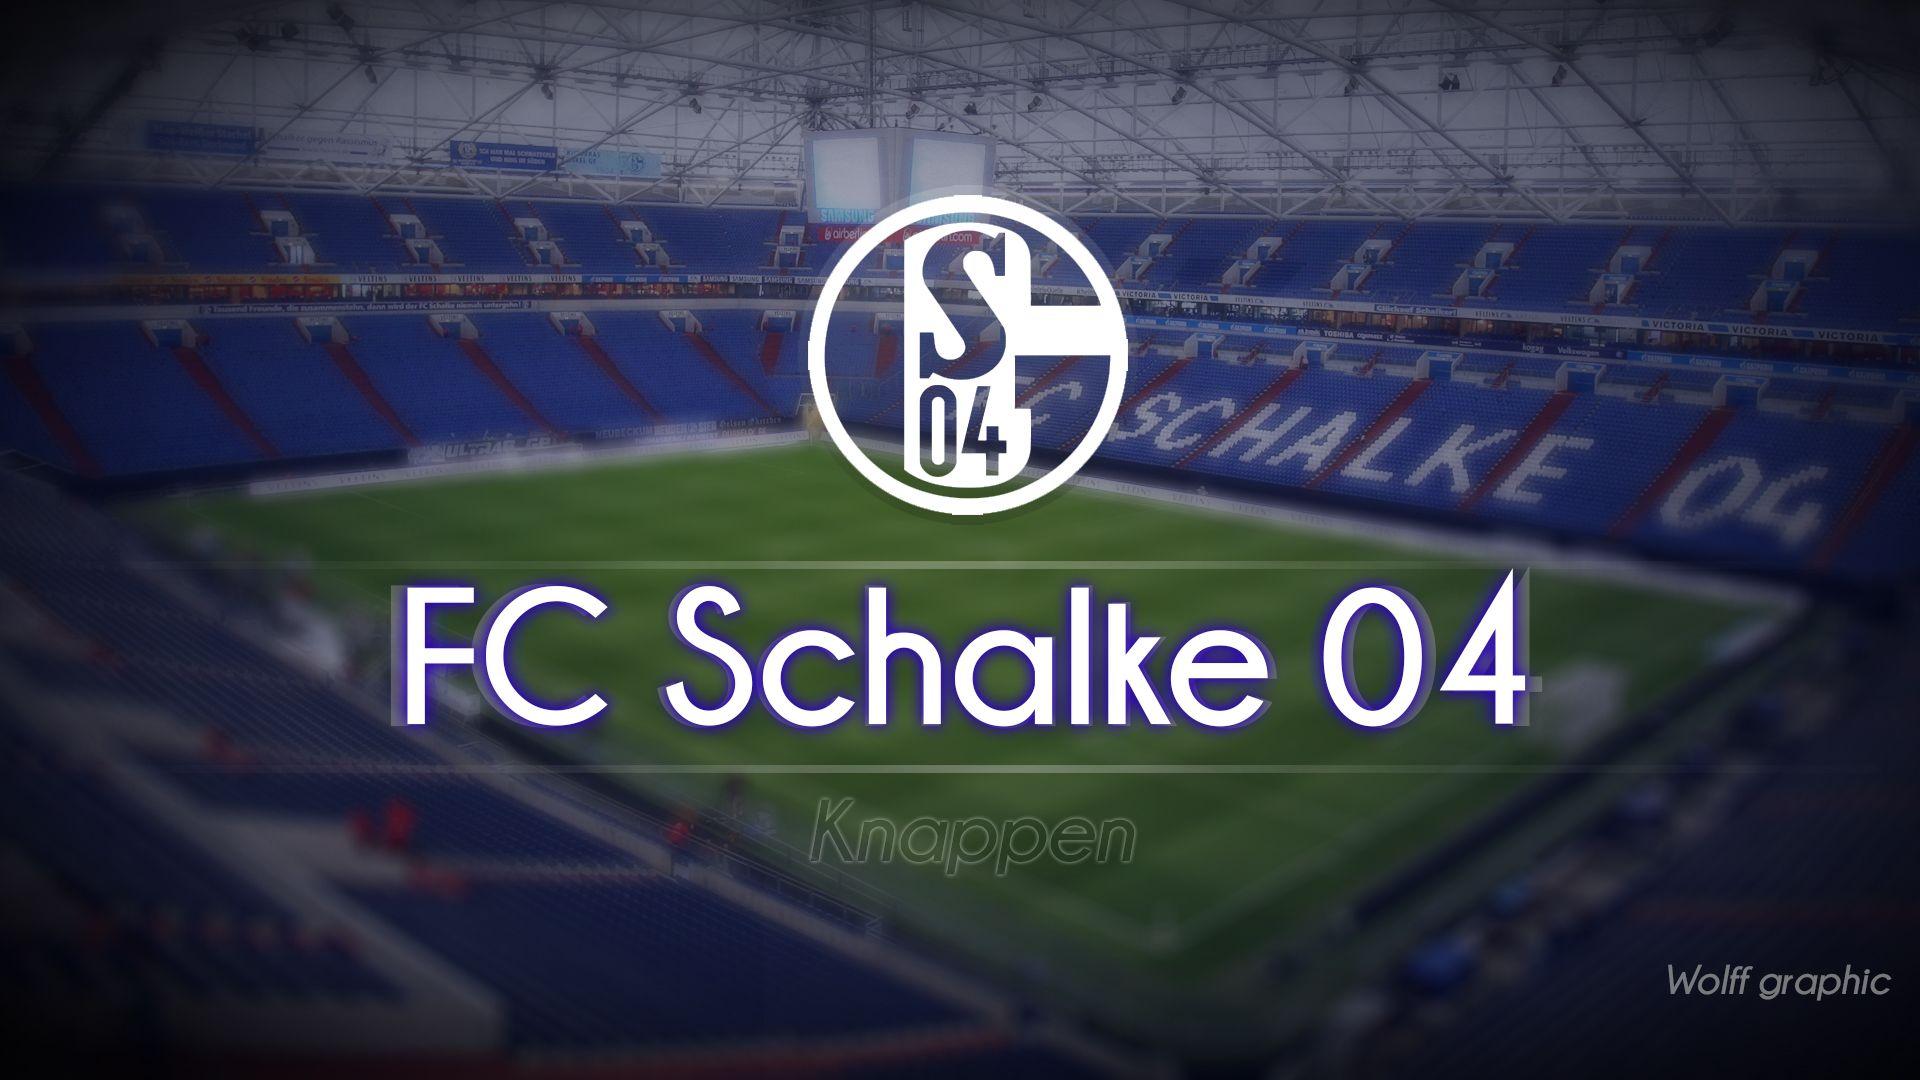 1920x1080px Fc Schalke 04 922.08 KB